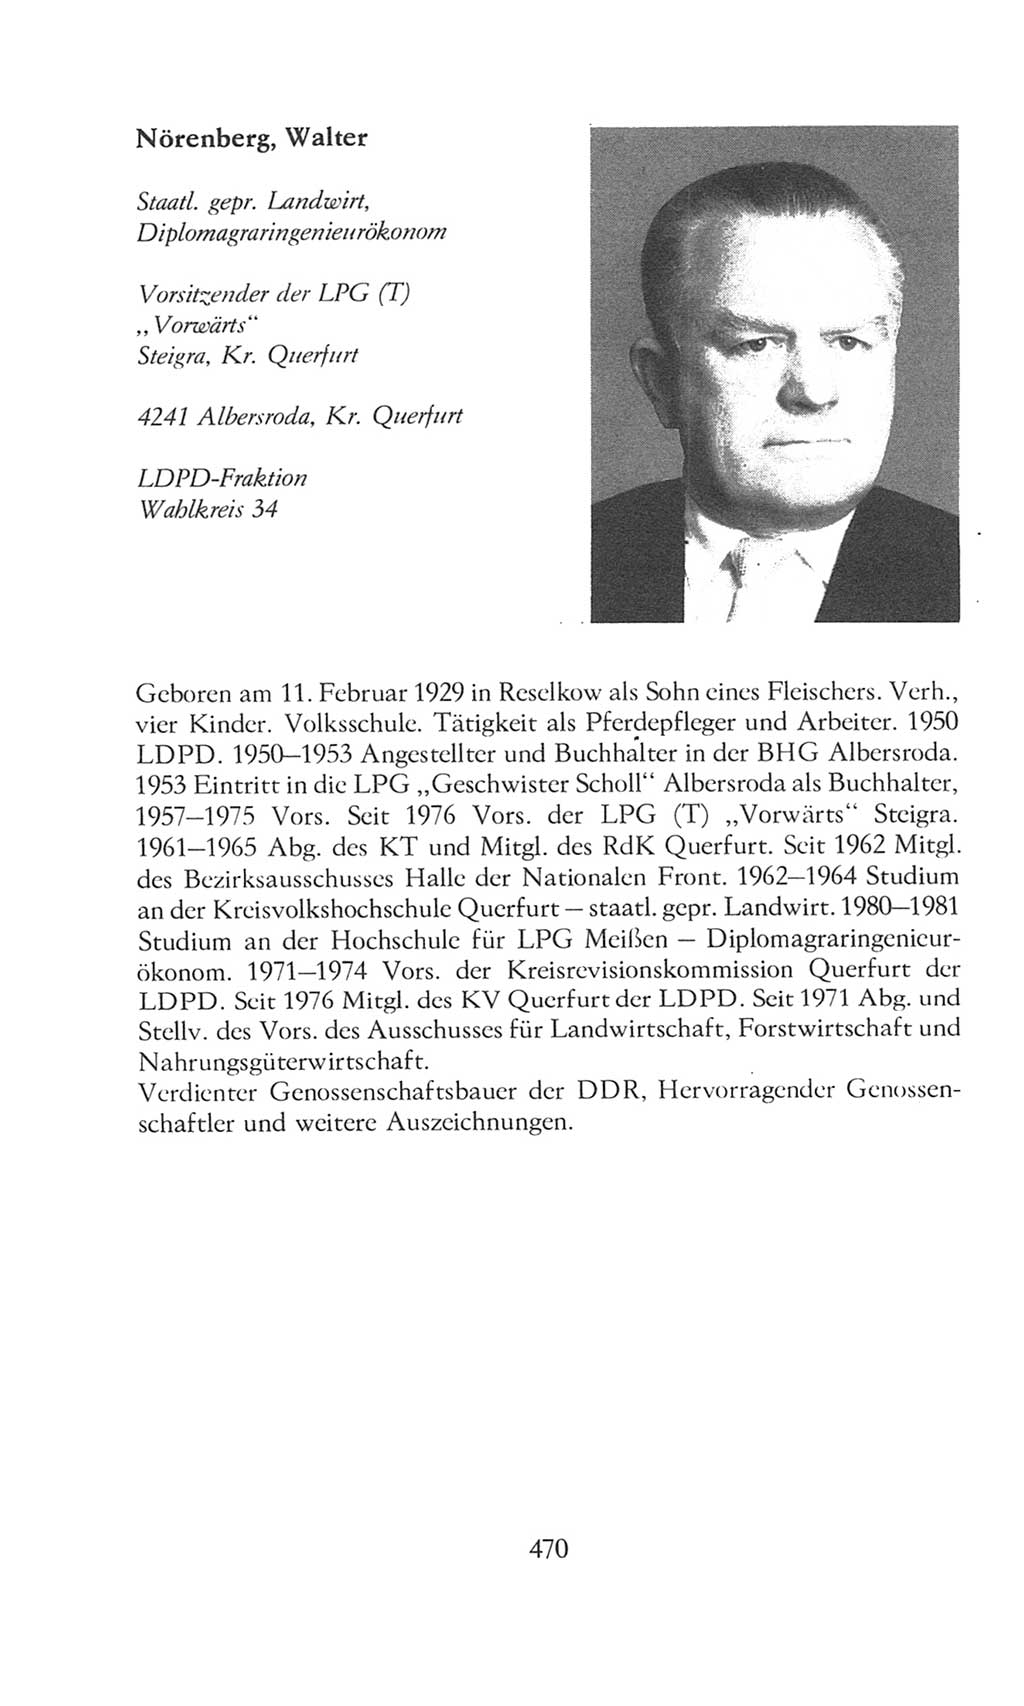 Volkskammer (VK) der Deutschen Demokratischen Republik (DDR), 8. Wahlperiode 1981-1986, Seite 470 (VK. DDR 8. WP. 1981-1986, S. 470)